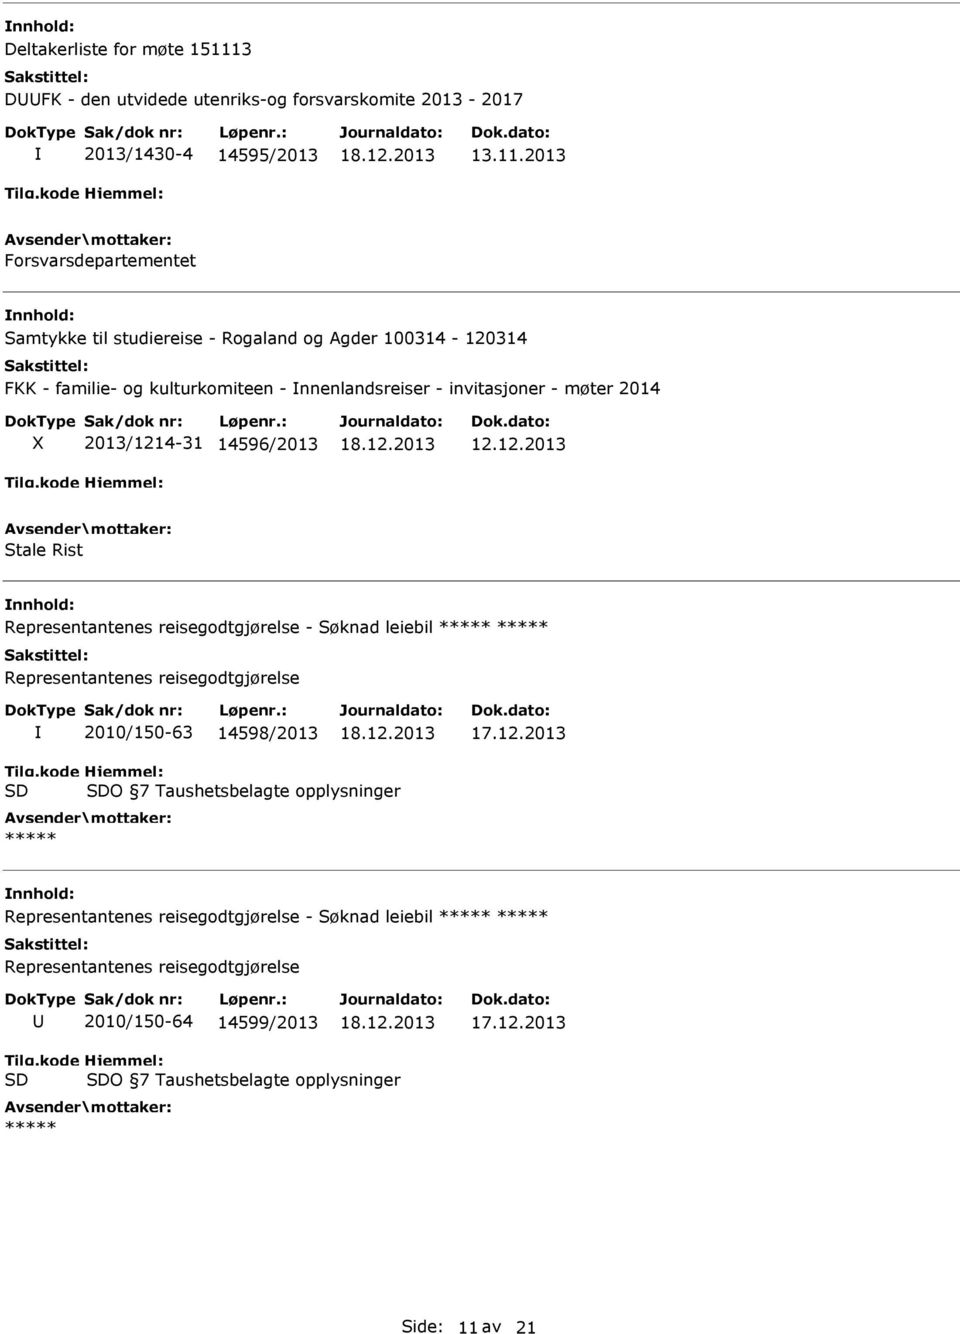 2013 Forsvarsdepartementet Samtykke til studiereise - Rogaland og Agder 100314-120314 FKK - familie- og kulturkomiteen - nnenlandsreiser - invitasjoner -